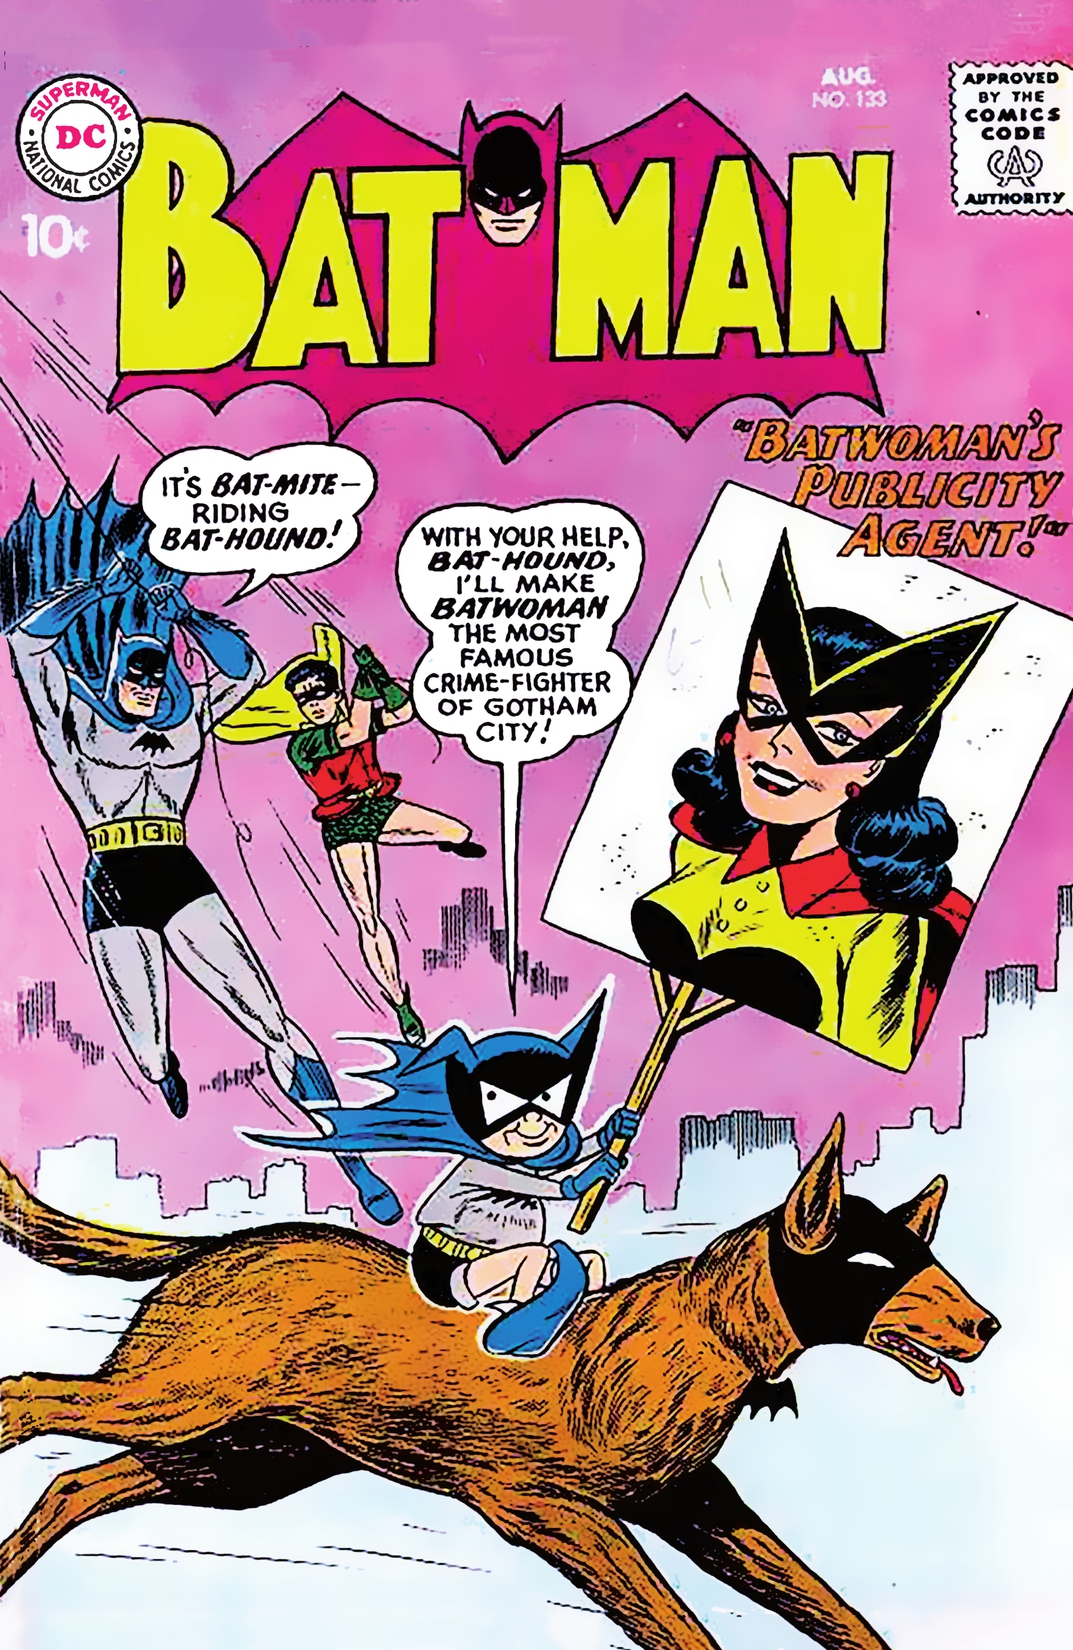 Batman (1940-2011) #133 preview images